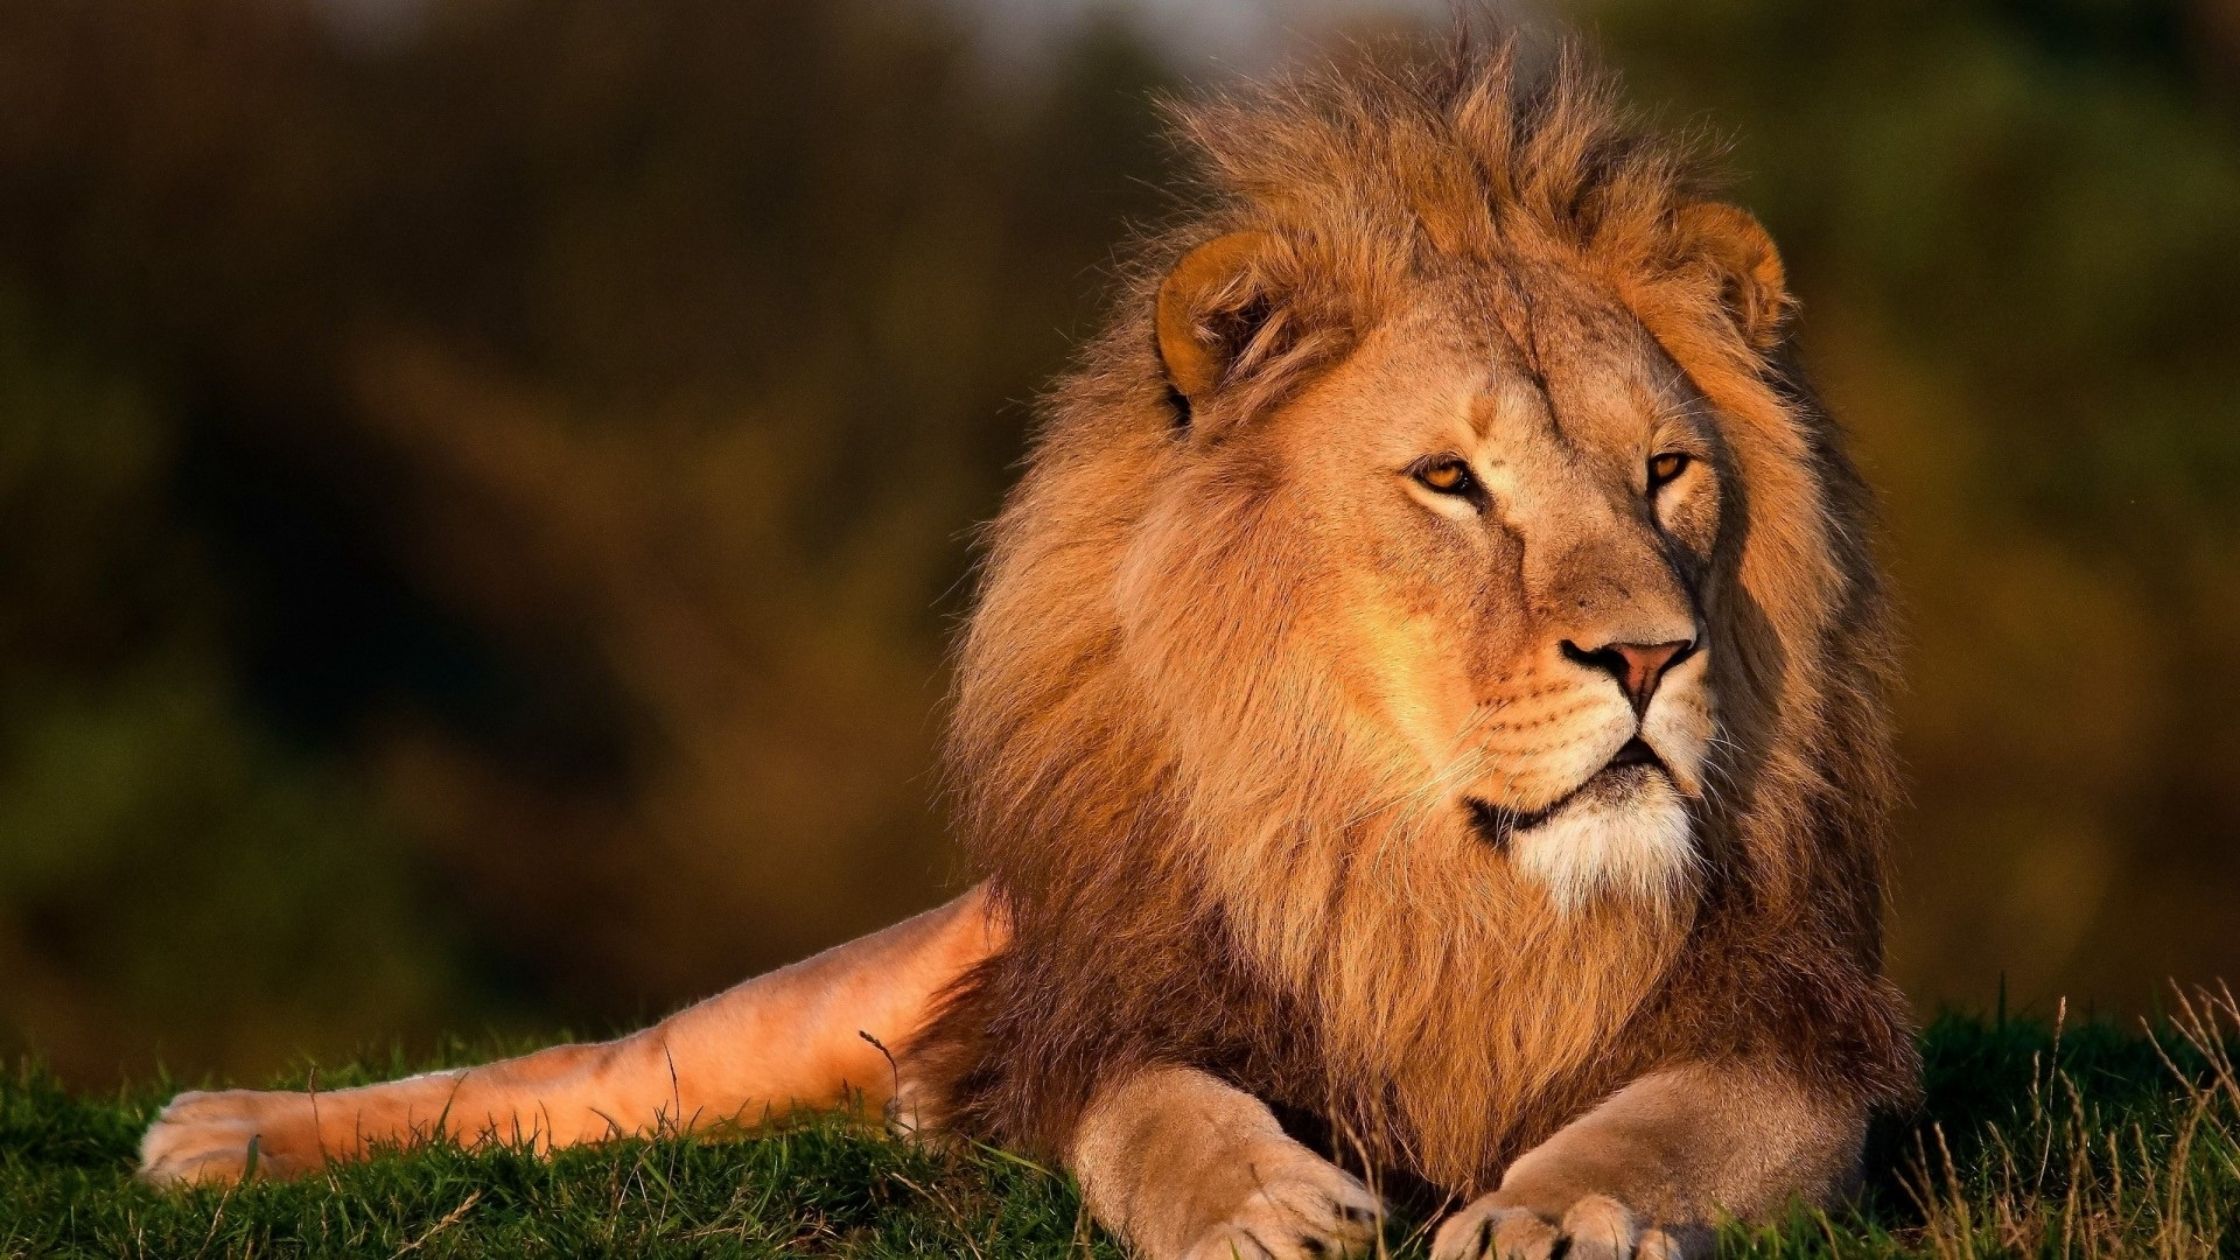 イソップの寓話 獅子 ライオン の分け前 から得られる教訓について調べてみました トピックスラボ